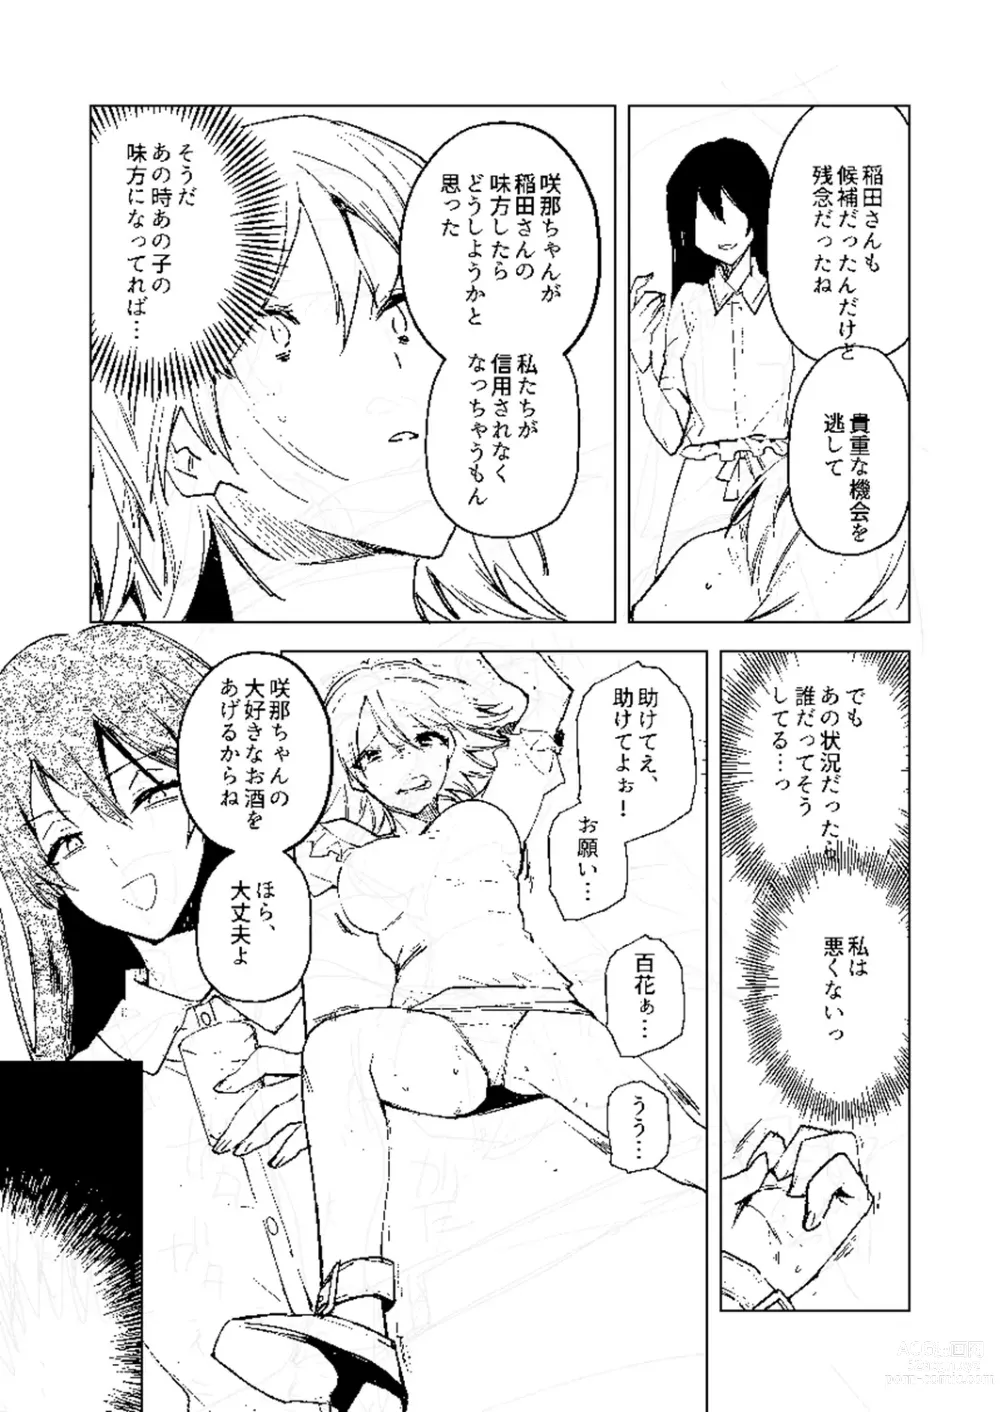 Page 285 of manga Bad endroll